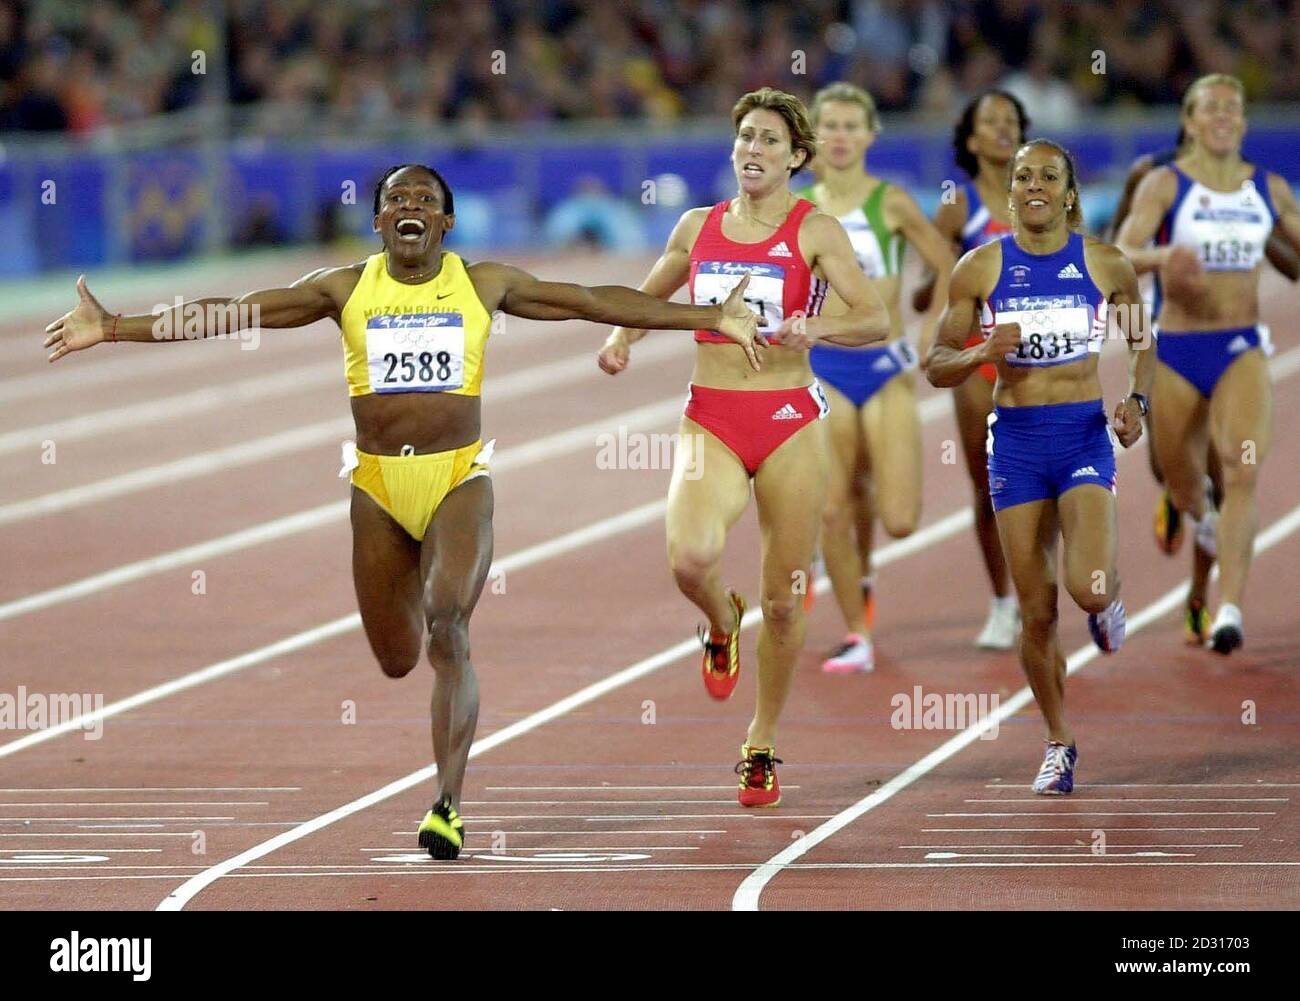 Die Großbritanniens Kelly Holmes (Nummer 1831) wird heute, Samstag, 25. September 2000, Dritter und nimmt die Bronzemedaille im 800-m-Finale der Frauen bei den Olympischen Spielen in Sydney ein. Maria Mutola aus Mosambik (Nummer 2588) gewann die Goldmedaille. Stockfoto